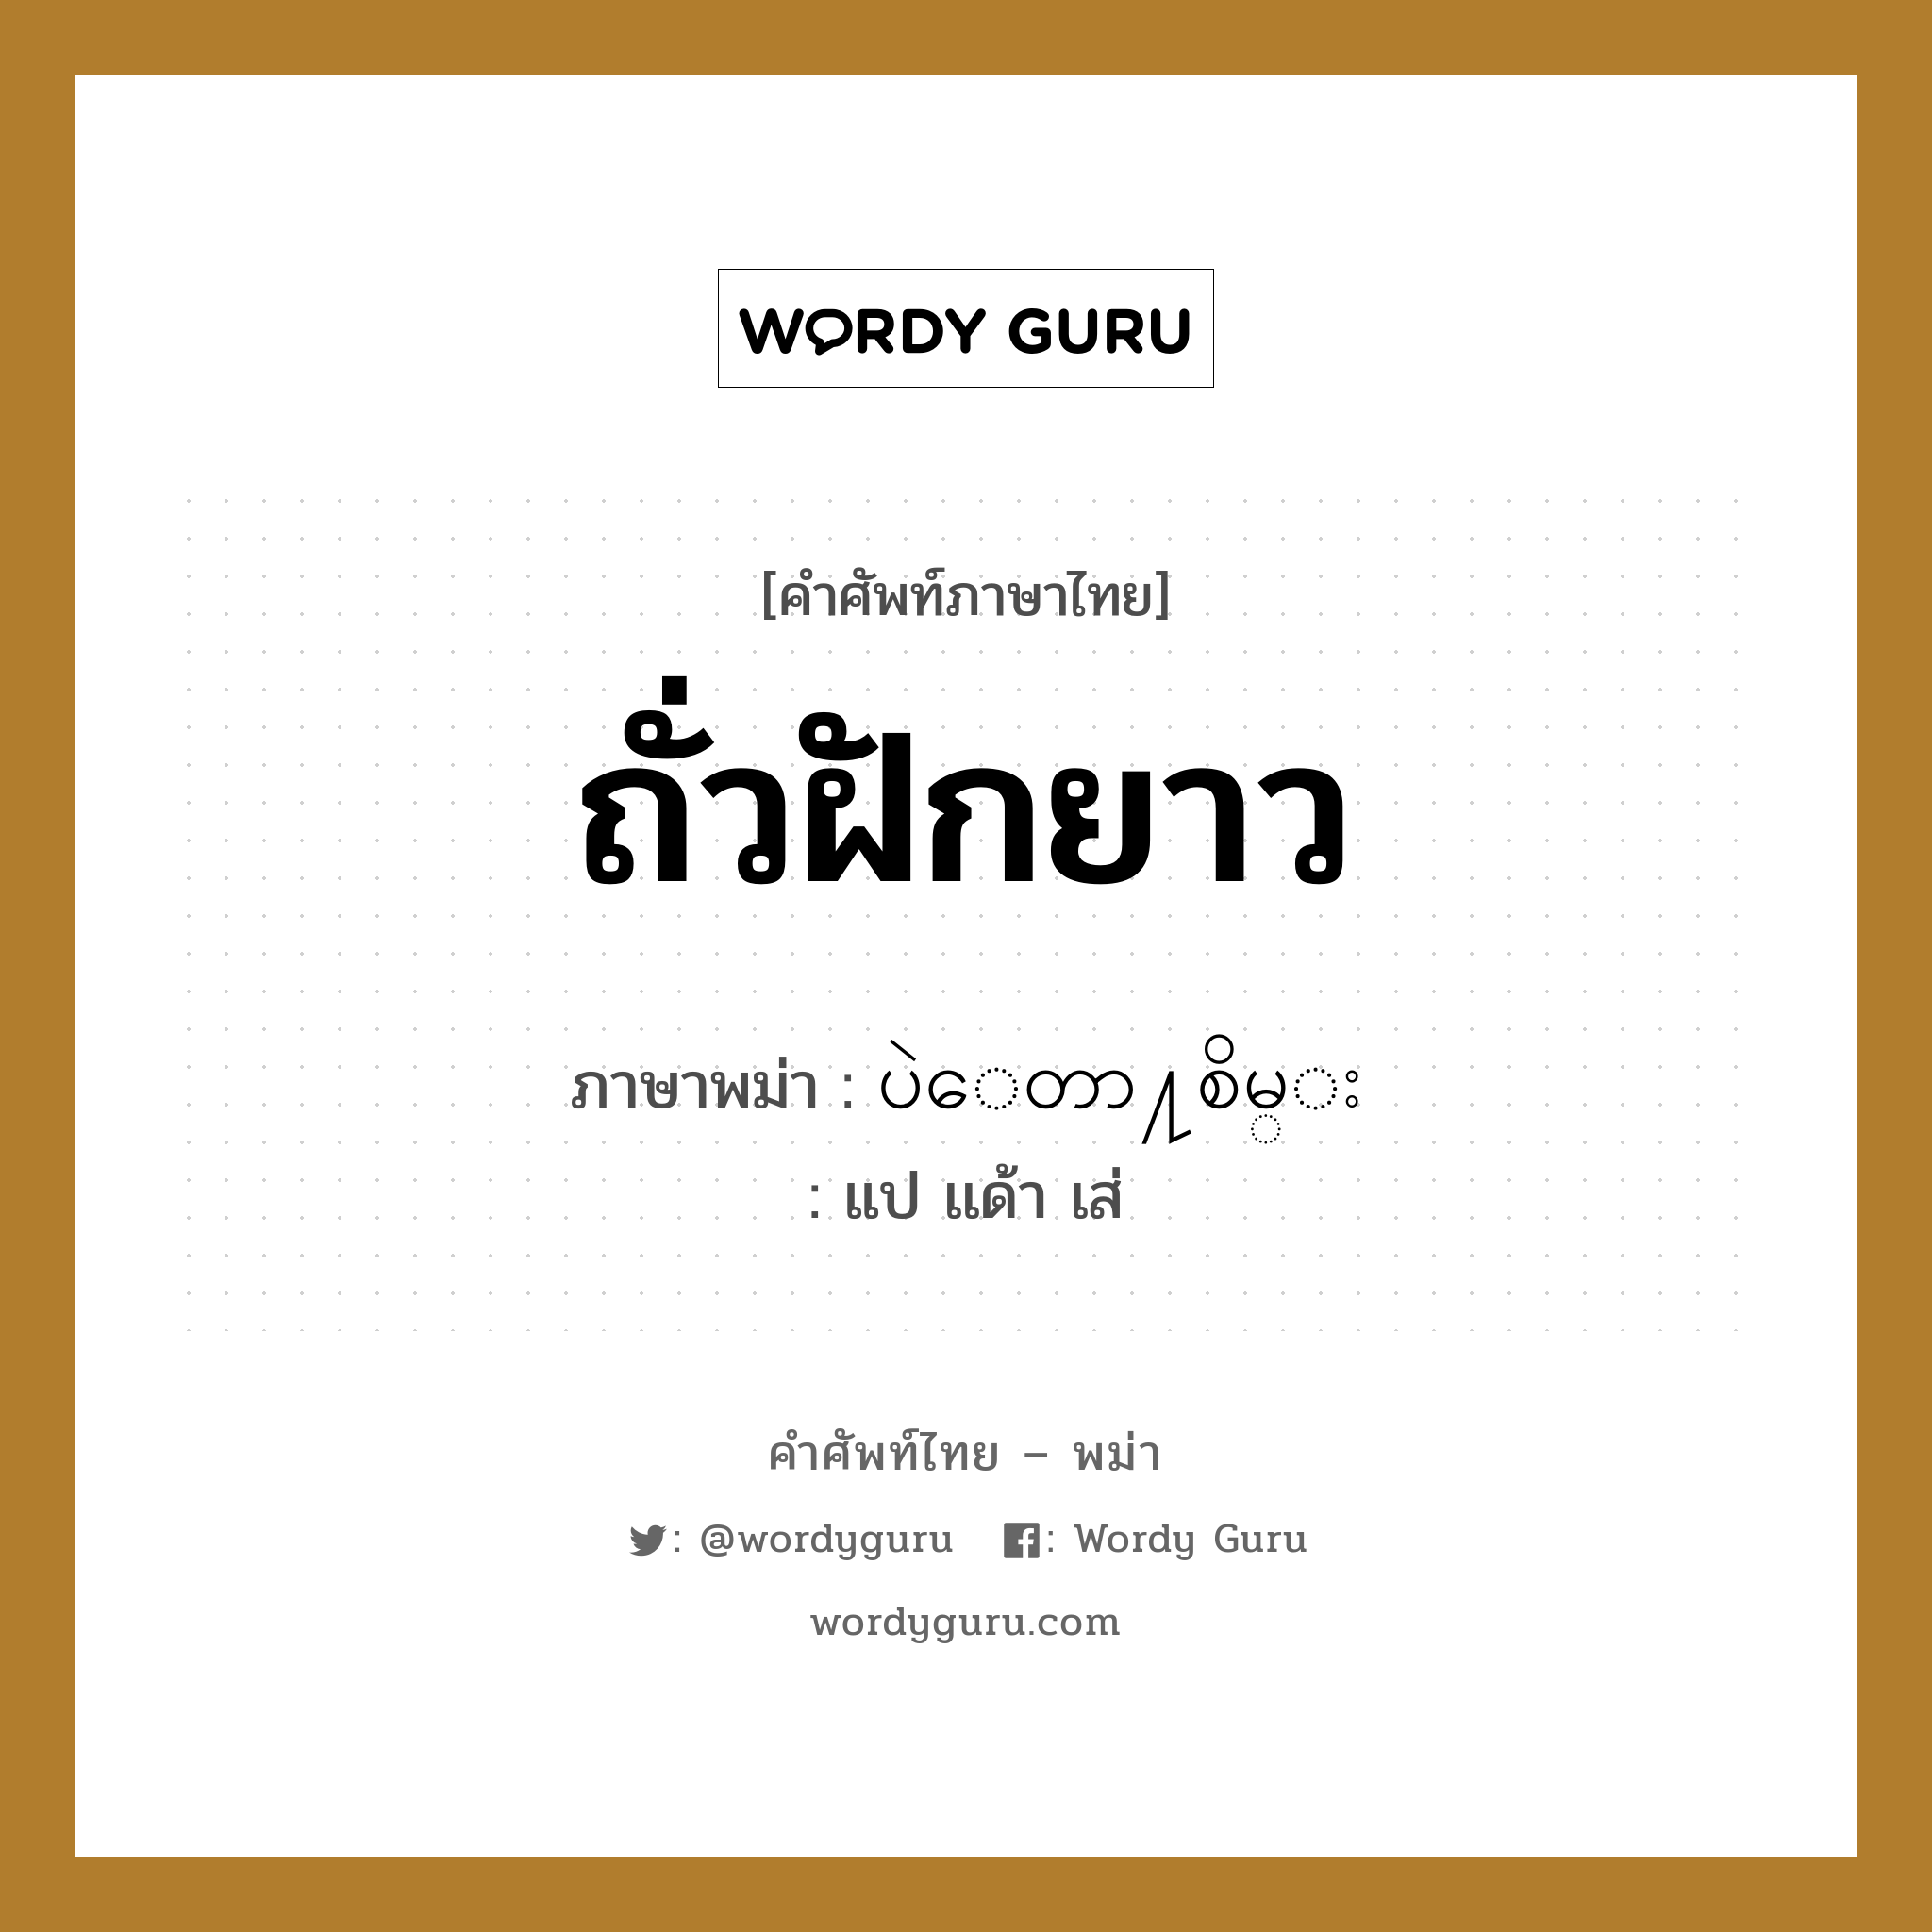 ถั่วฝักยาว ภาษาพม่าคืออะไร, คำศัพท์ภาษาไทย - พม่า ถั่วฝักยาว ภาษาพม่า ပဲေတာ႔စိမ္း หมวด ผักและผลไม้ แป เเด้า เส่ หมวด ผักและผลไม้